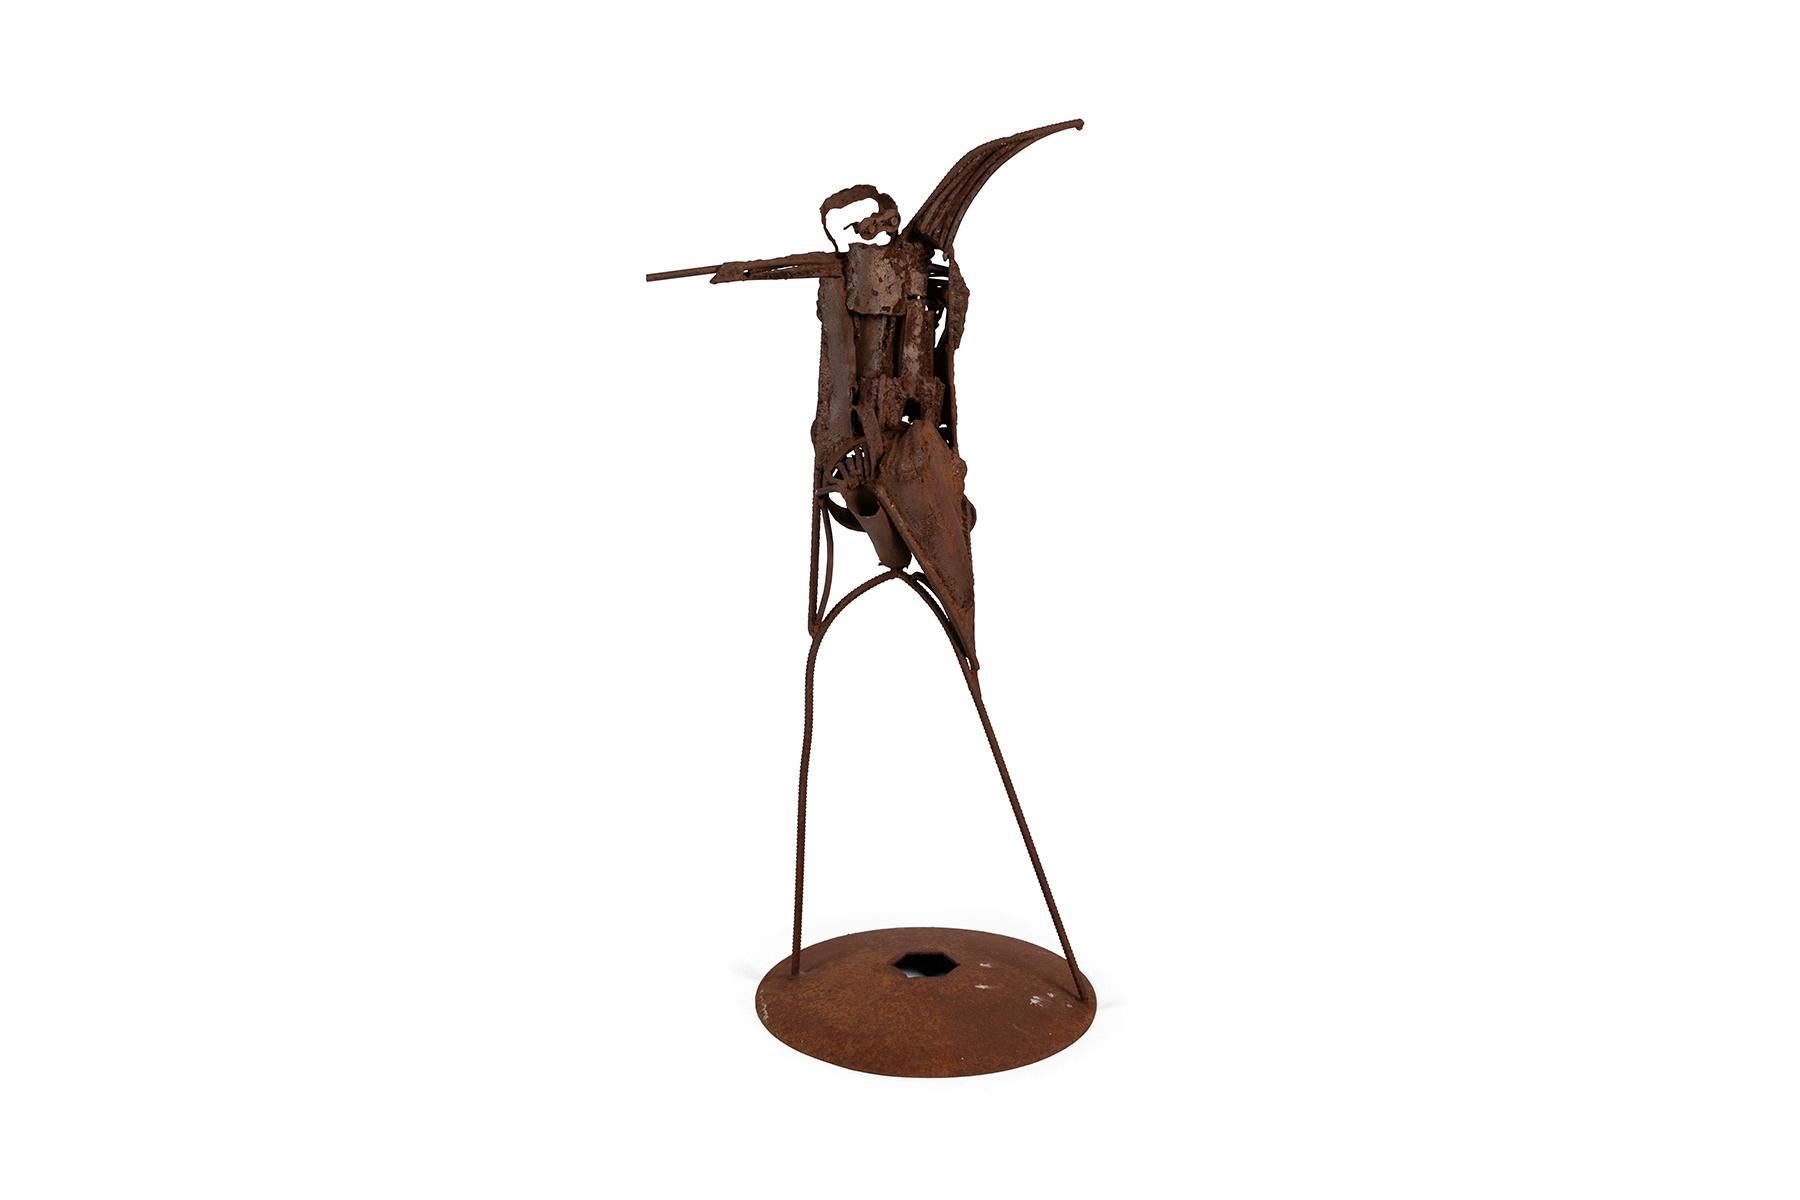 Connue pour ses figures expressionnistes abstraites, tant en peinture qu'en sculpture, cette grande sculpture brutaliste en acier patiné de l'artiste de l'Arizona Agnese Udinotti est un exemple frappant de son style unique. La sculpture fonctionne